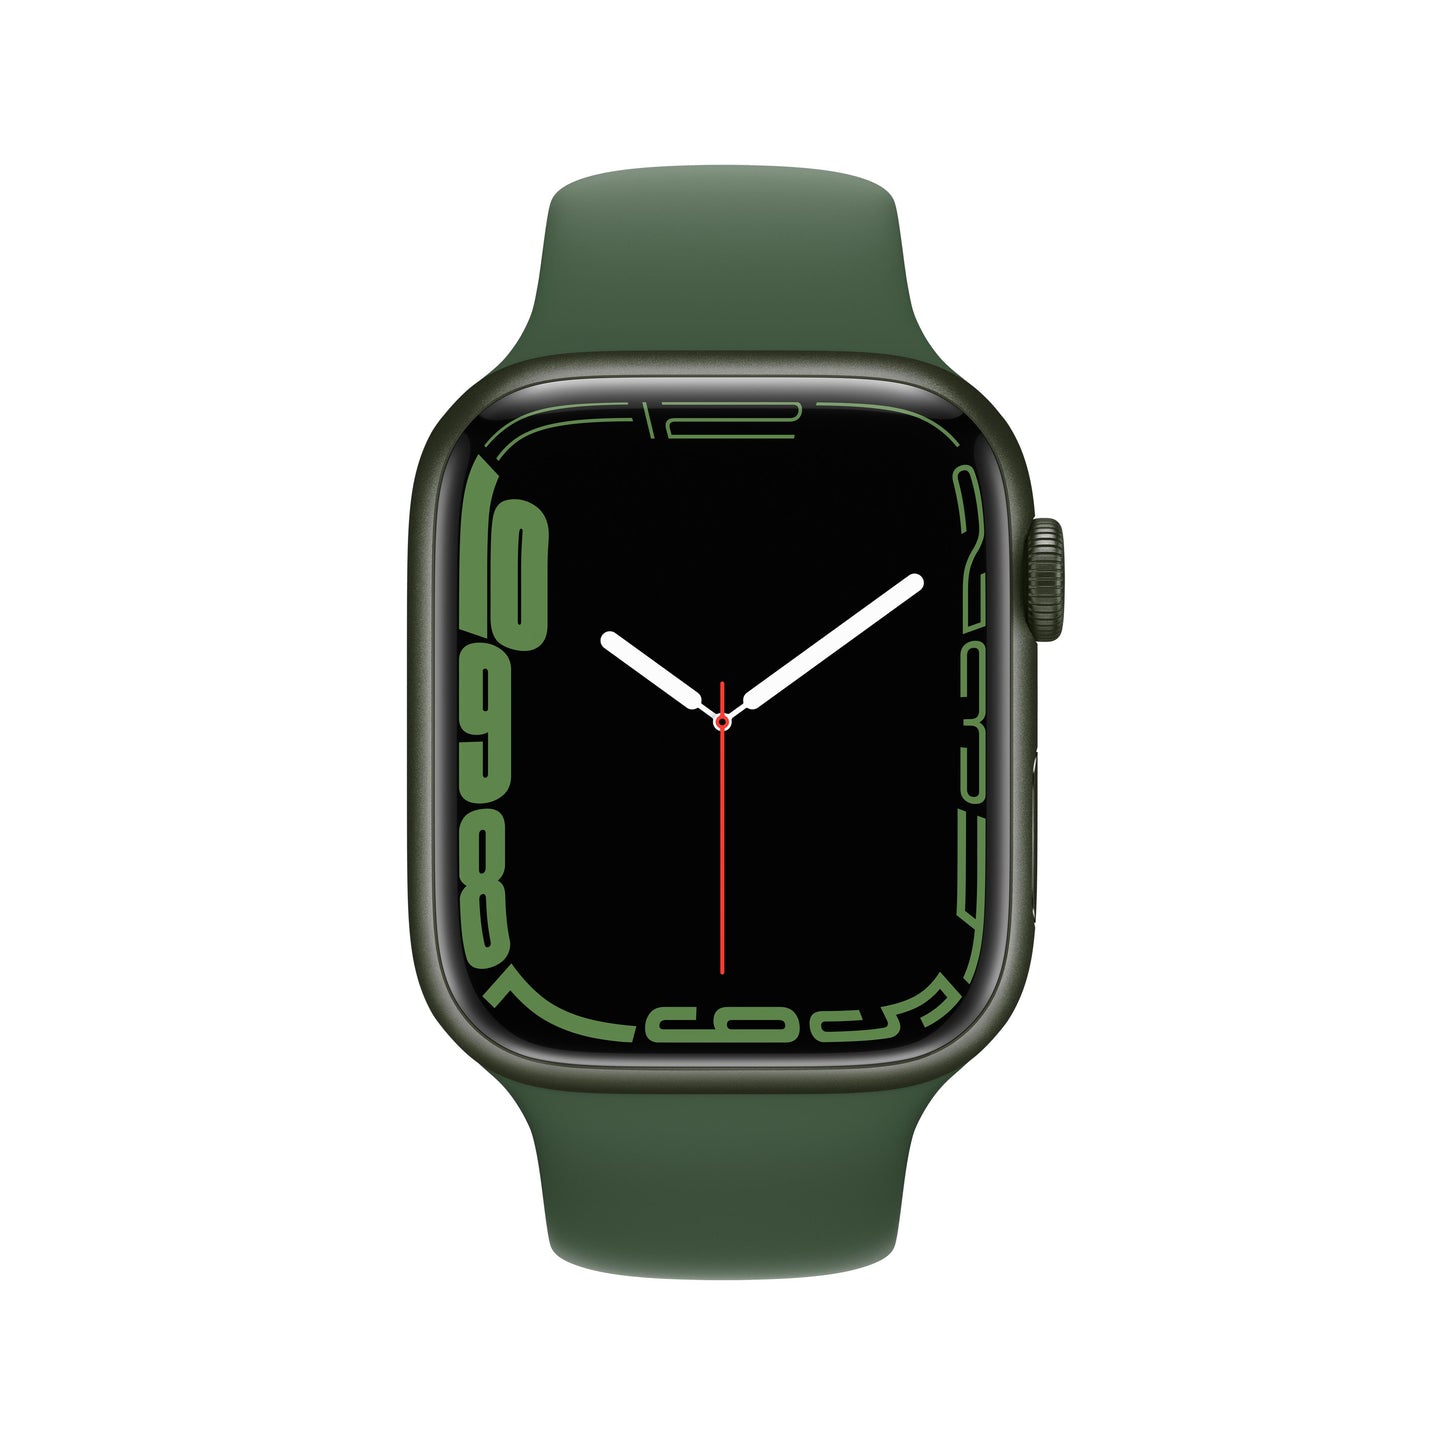 Apple Watch Series 7 GPS + Cellular, 45mm Green Aluminium Case with Clover Sport Band - Regular